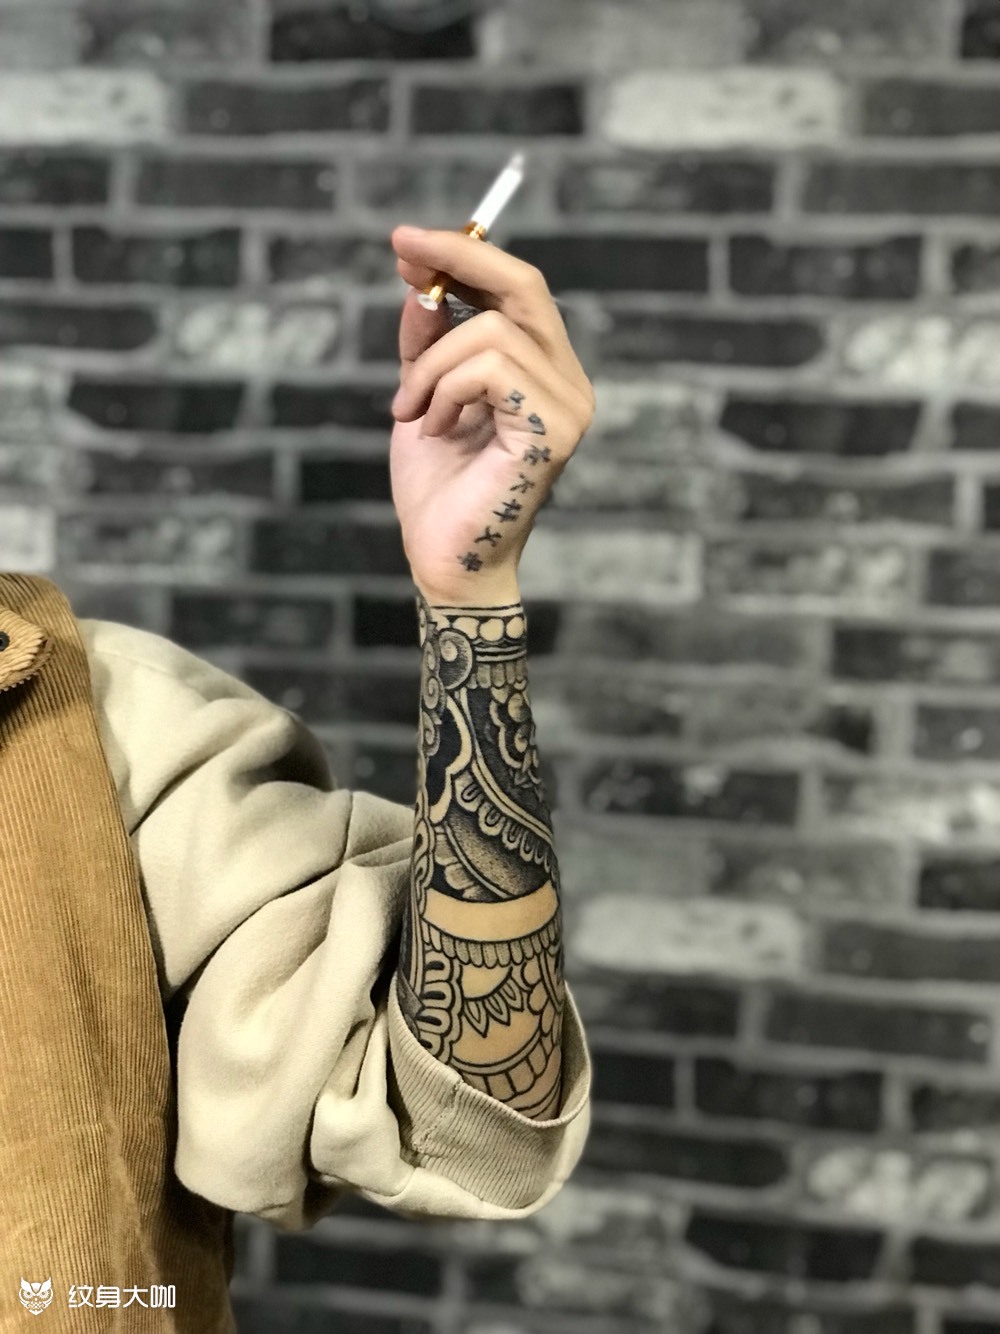 梵花设计花臂(未完)_纹身图案手稿图片_牌社tattoo 的纹身作品集